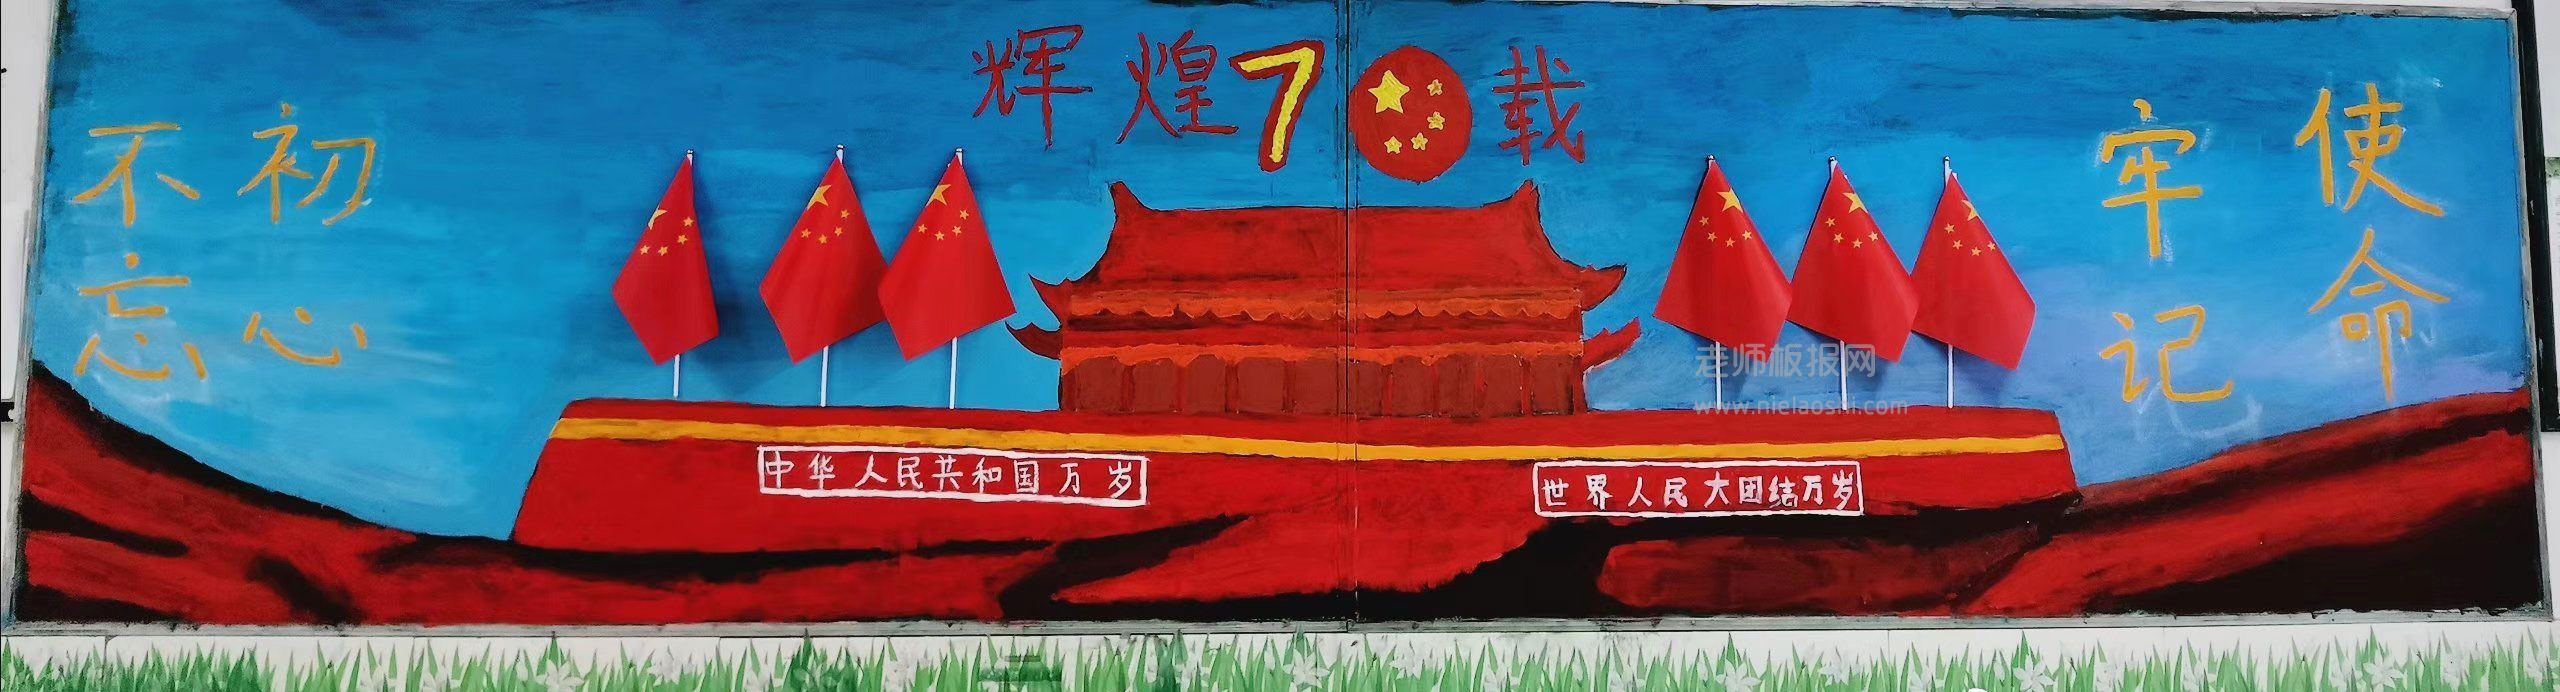 国庆节黑板报:新中国辉煌70周年